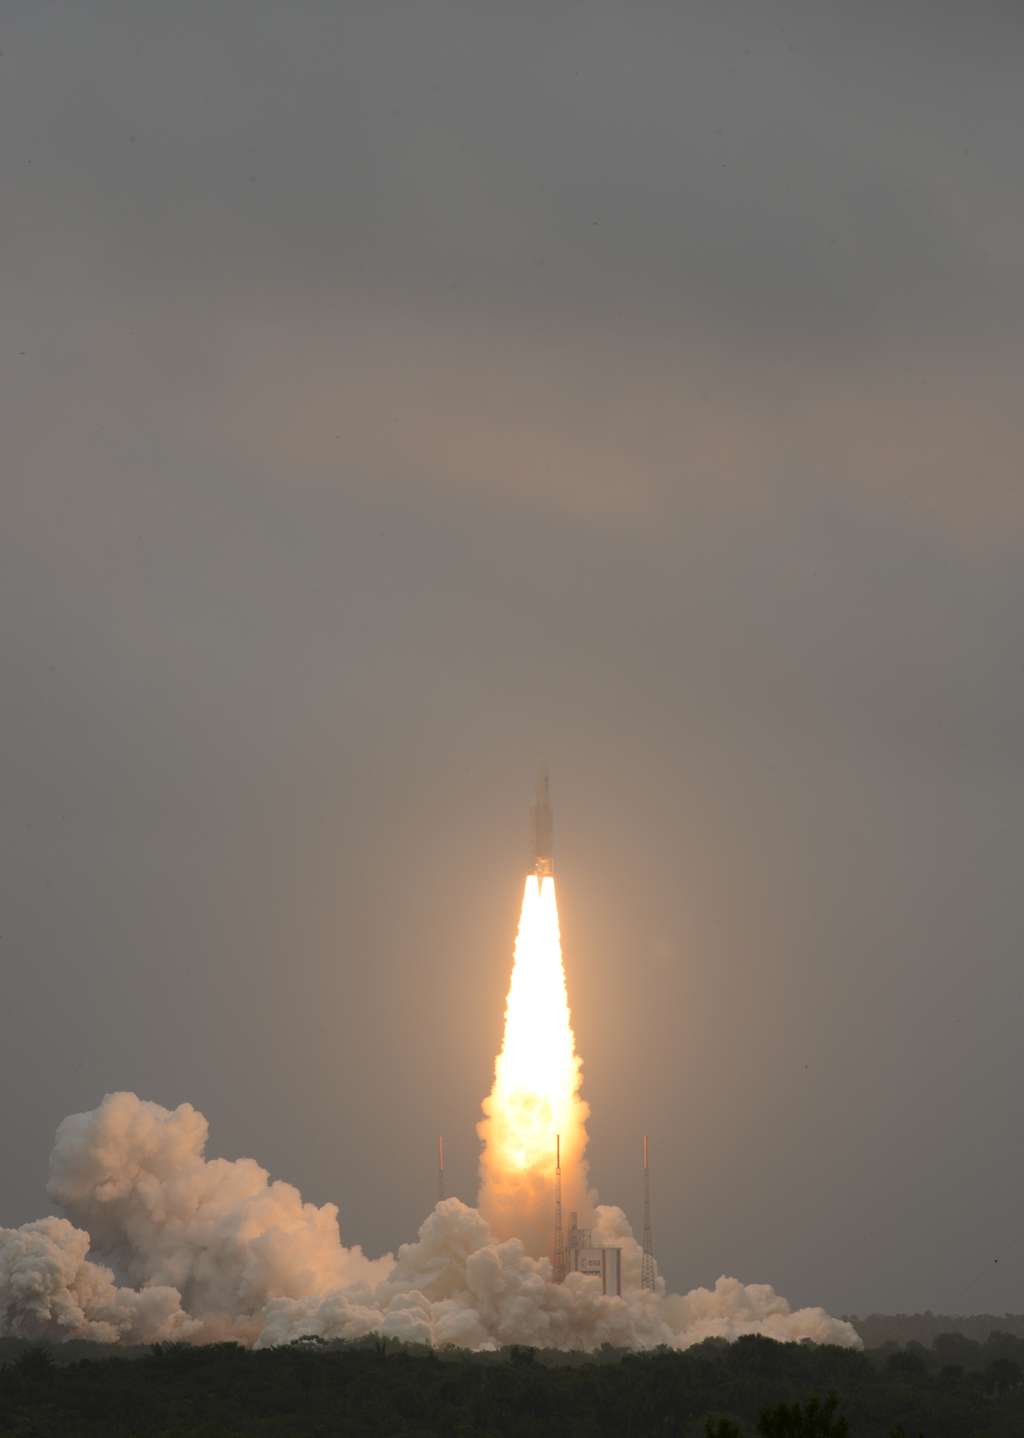 Le job a été fait. Construit par ArianeGroup, le lanceur Ariane 5 vient de réussir son 82<sup>e</sup> lancement en mettant en orbite 4 nouveaux satellites de la constellation Galileo. © Remy Decourt